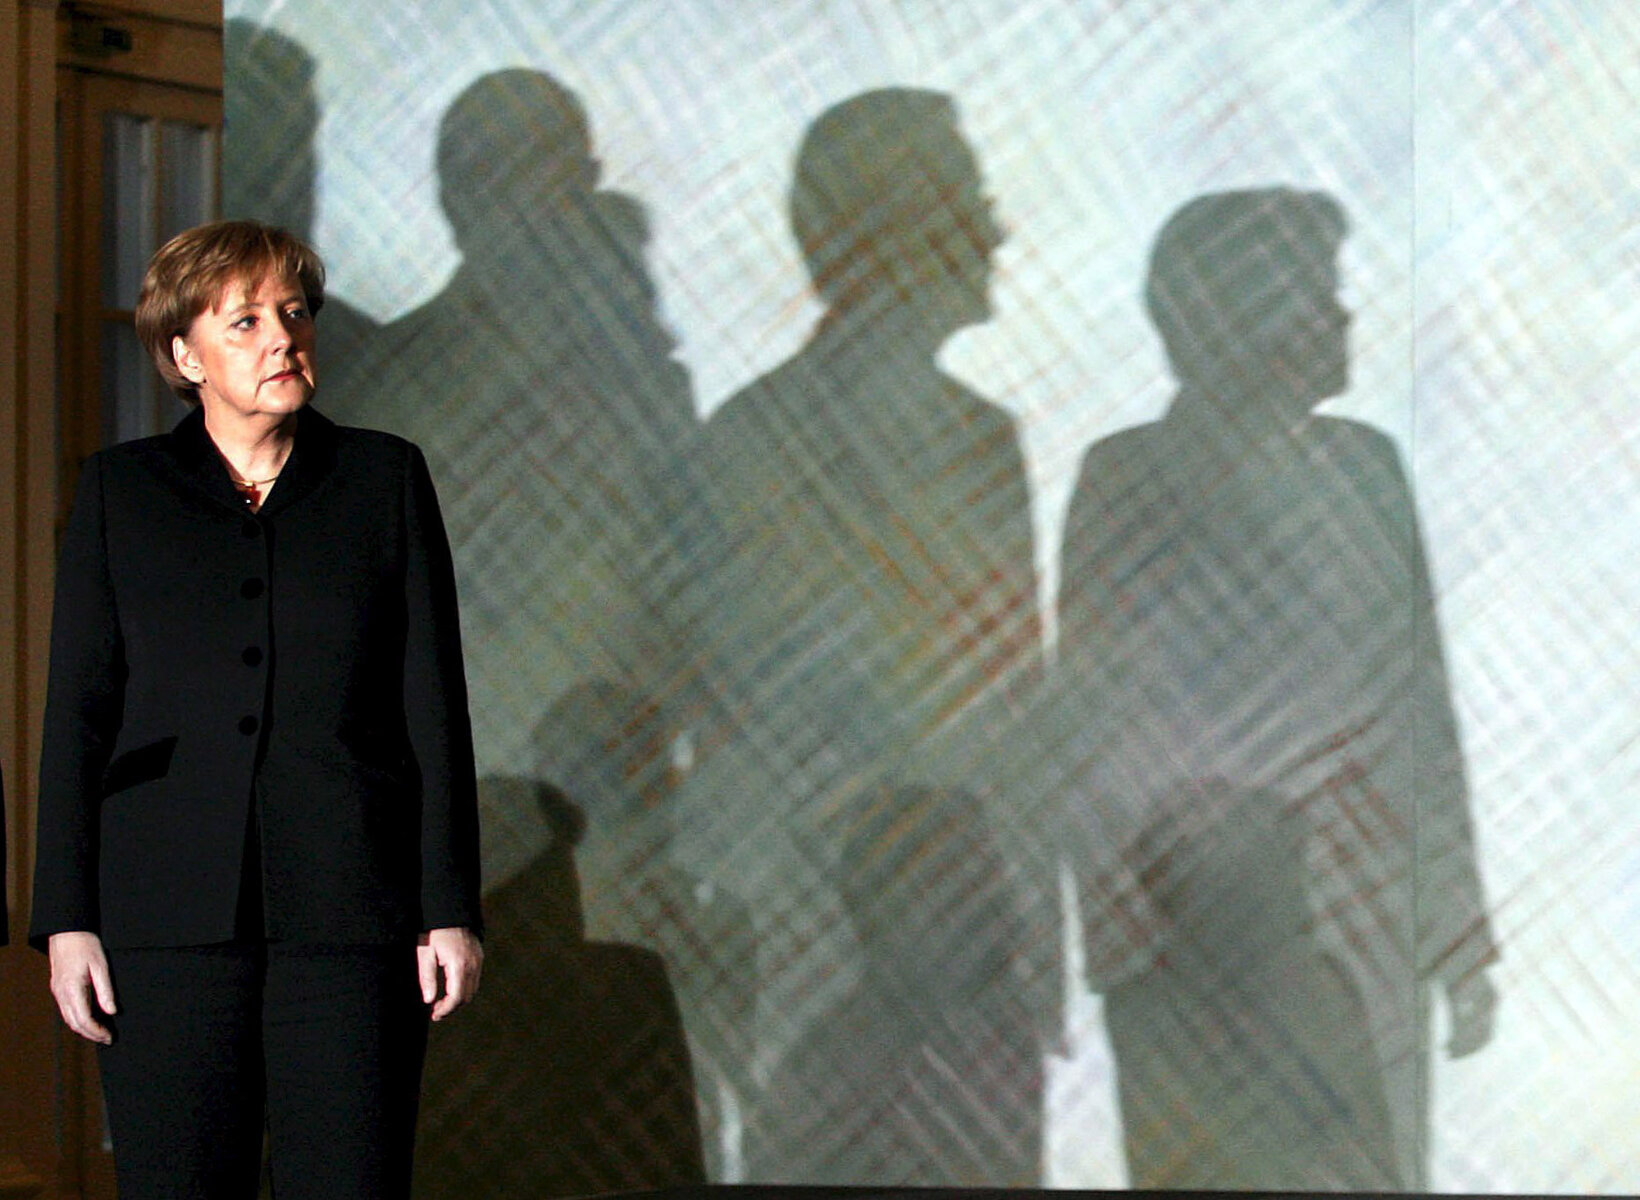 <p>Ангела Меркель, новоизбранный федеральный канцлер Германии, на заседании правительства в день своего вступления в должность, Берлин, 22 ноября 2005 года&nbsp;</p>

<p>Меркель стала первой женщиной на этом посту, и одновременно самым молодым федеральным канцлером в истории.&nbsp;</p>